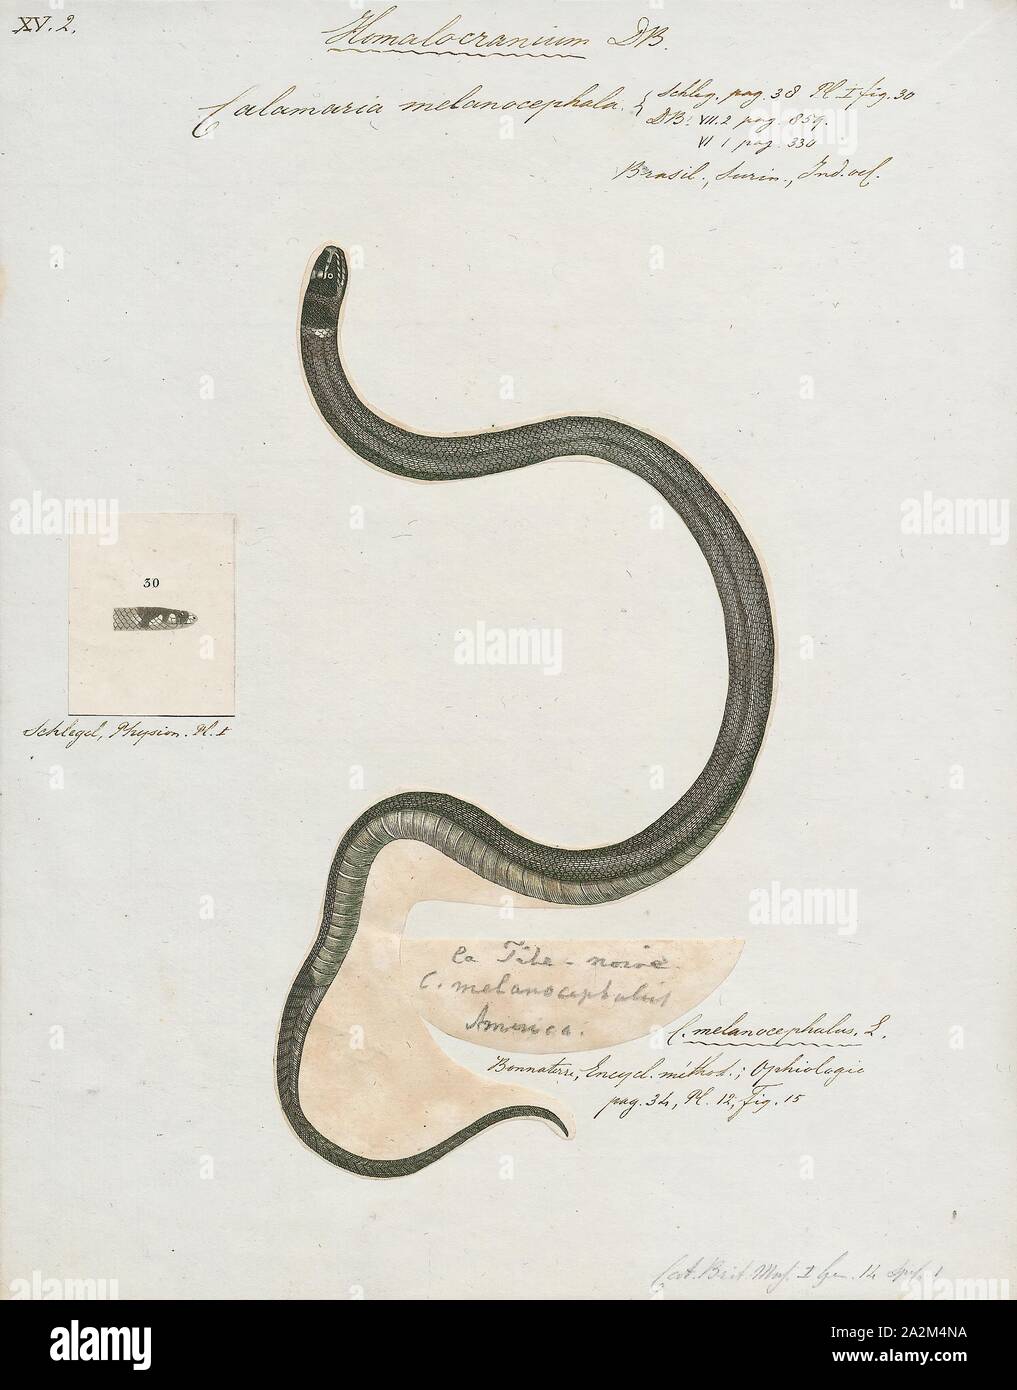 Calamaria melanocephala, Imprimer, Calamaria est une espèce de serpents fouisseurs nain de la famille des Colubridae., 1700-1880 Banque D'Images